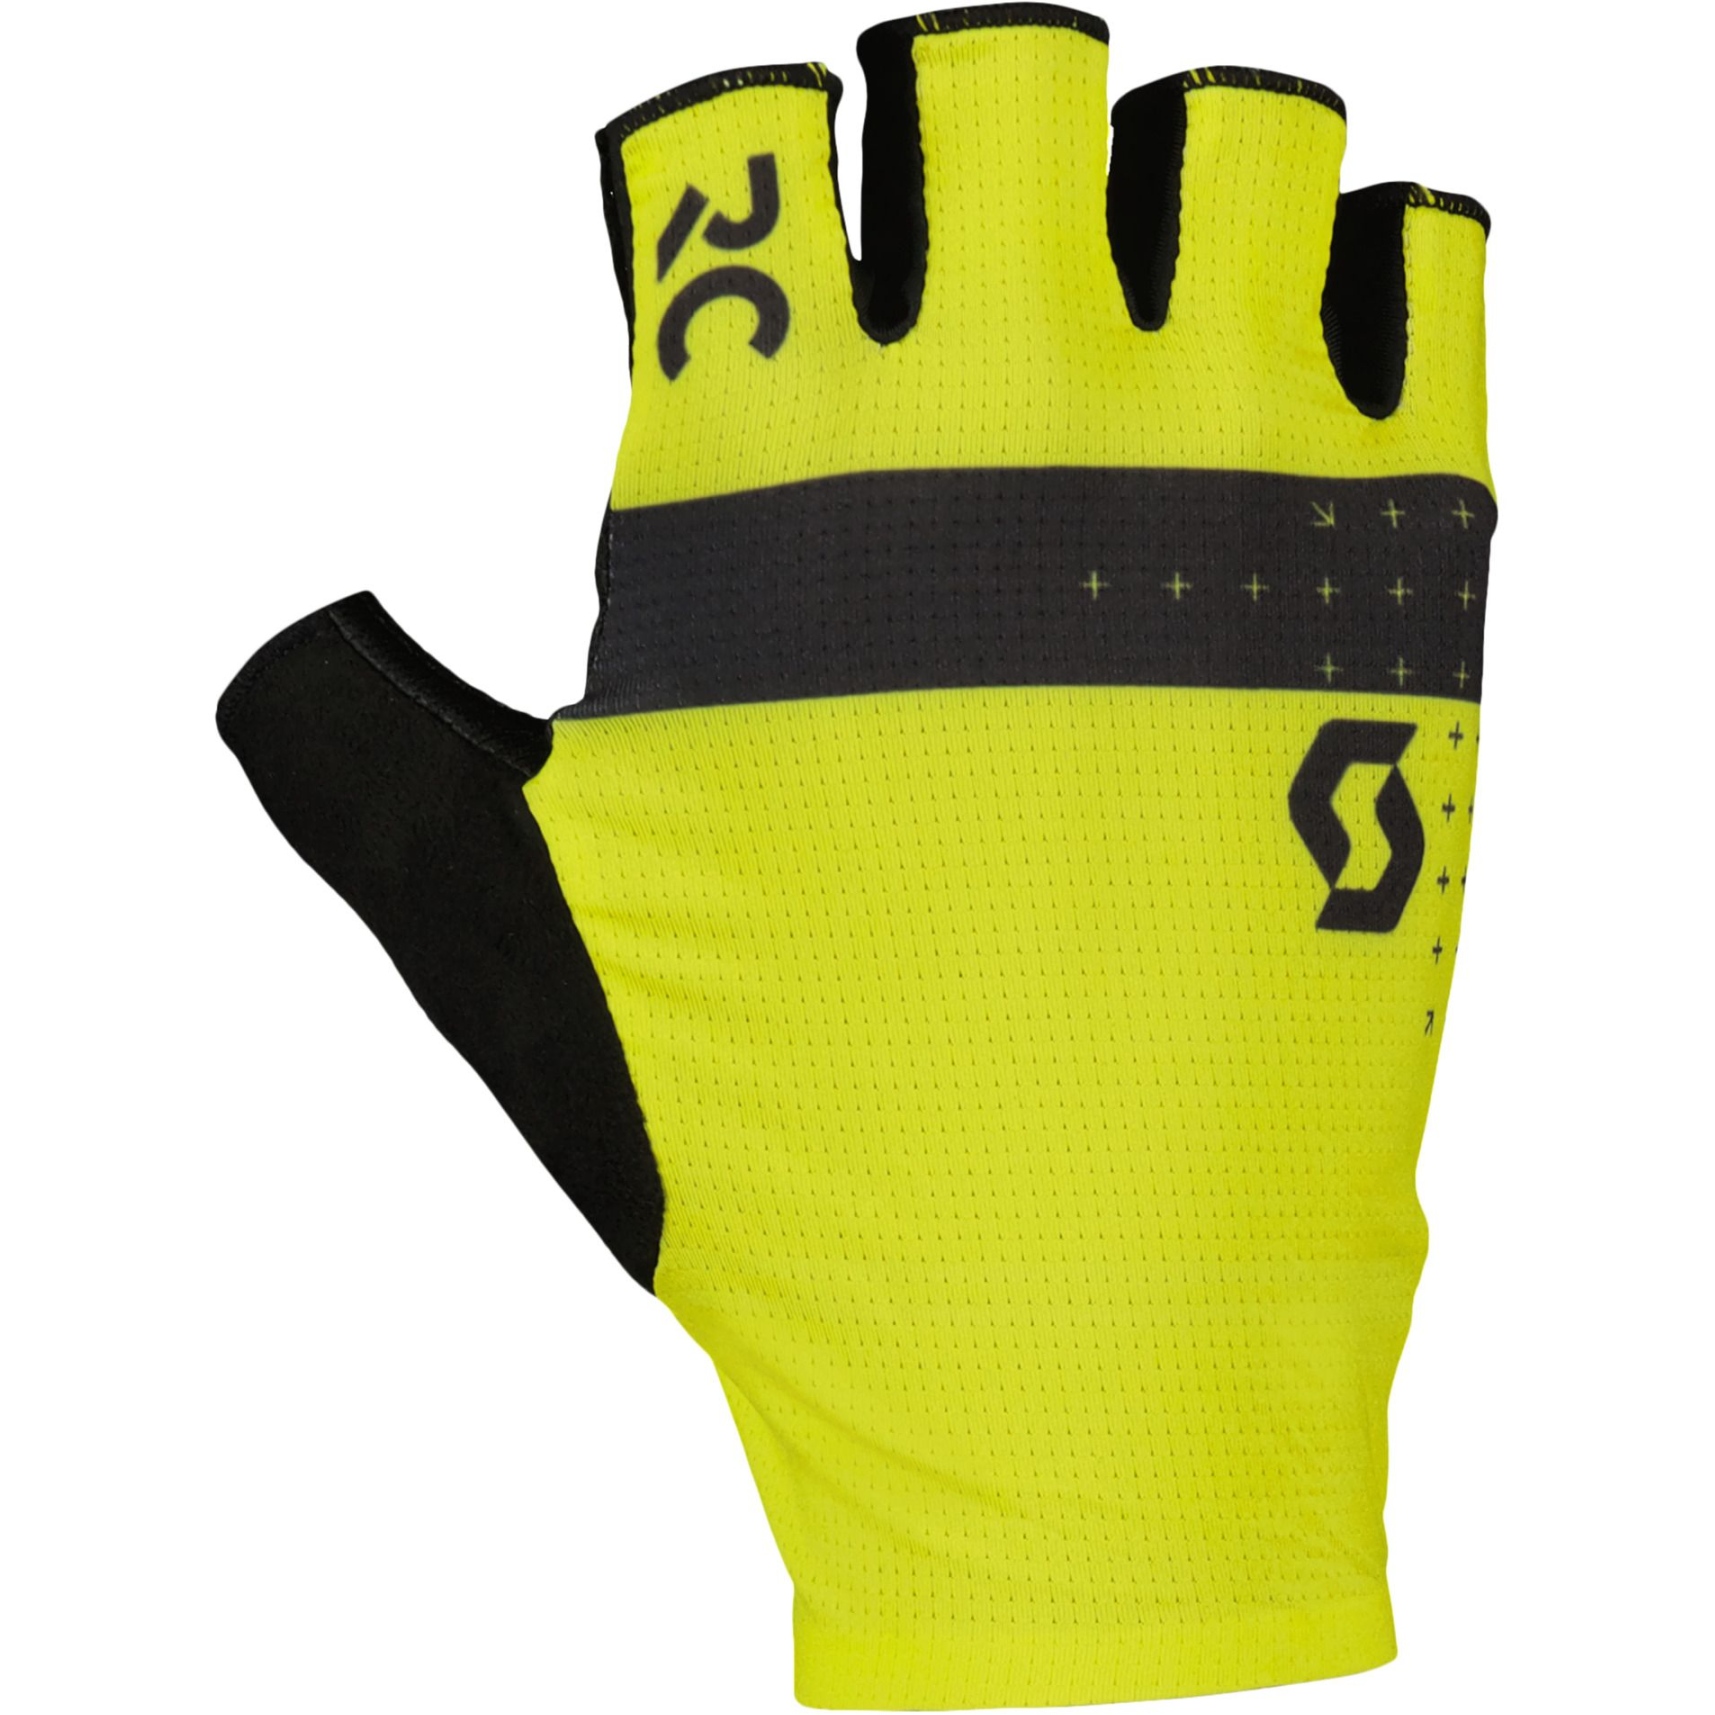 Productfoto van SCOTT RC Pro SF Handschoenen - sulphur yellow/black